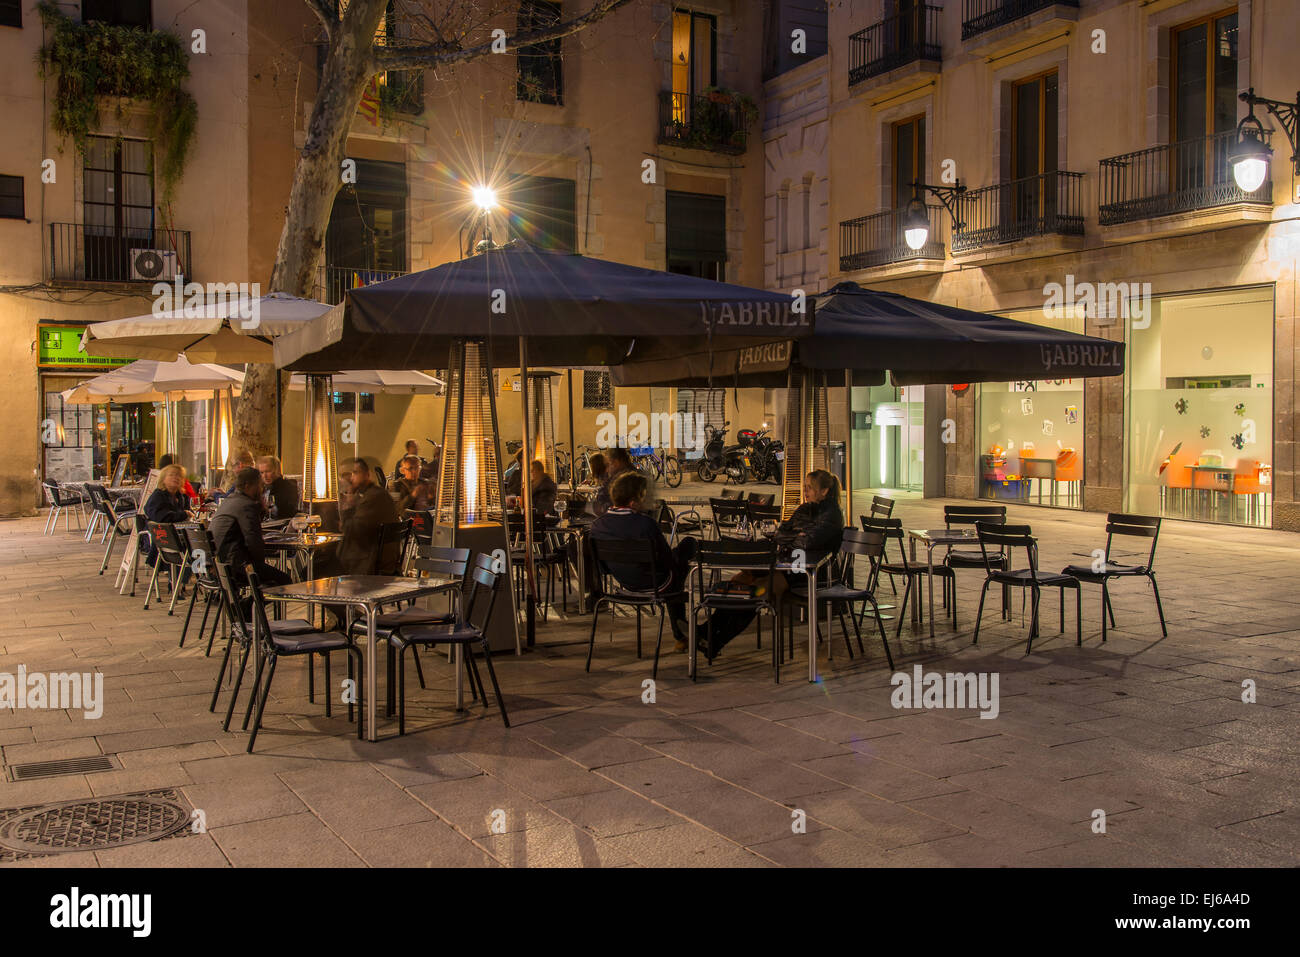 Vue de nuit sur la terrasse d'un café avec les touristes assis à des tables dans un carré de Barrio Gotico, Barcelone, Catalogne, Espagne Banque D'Images